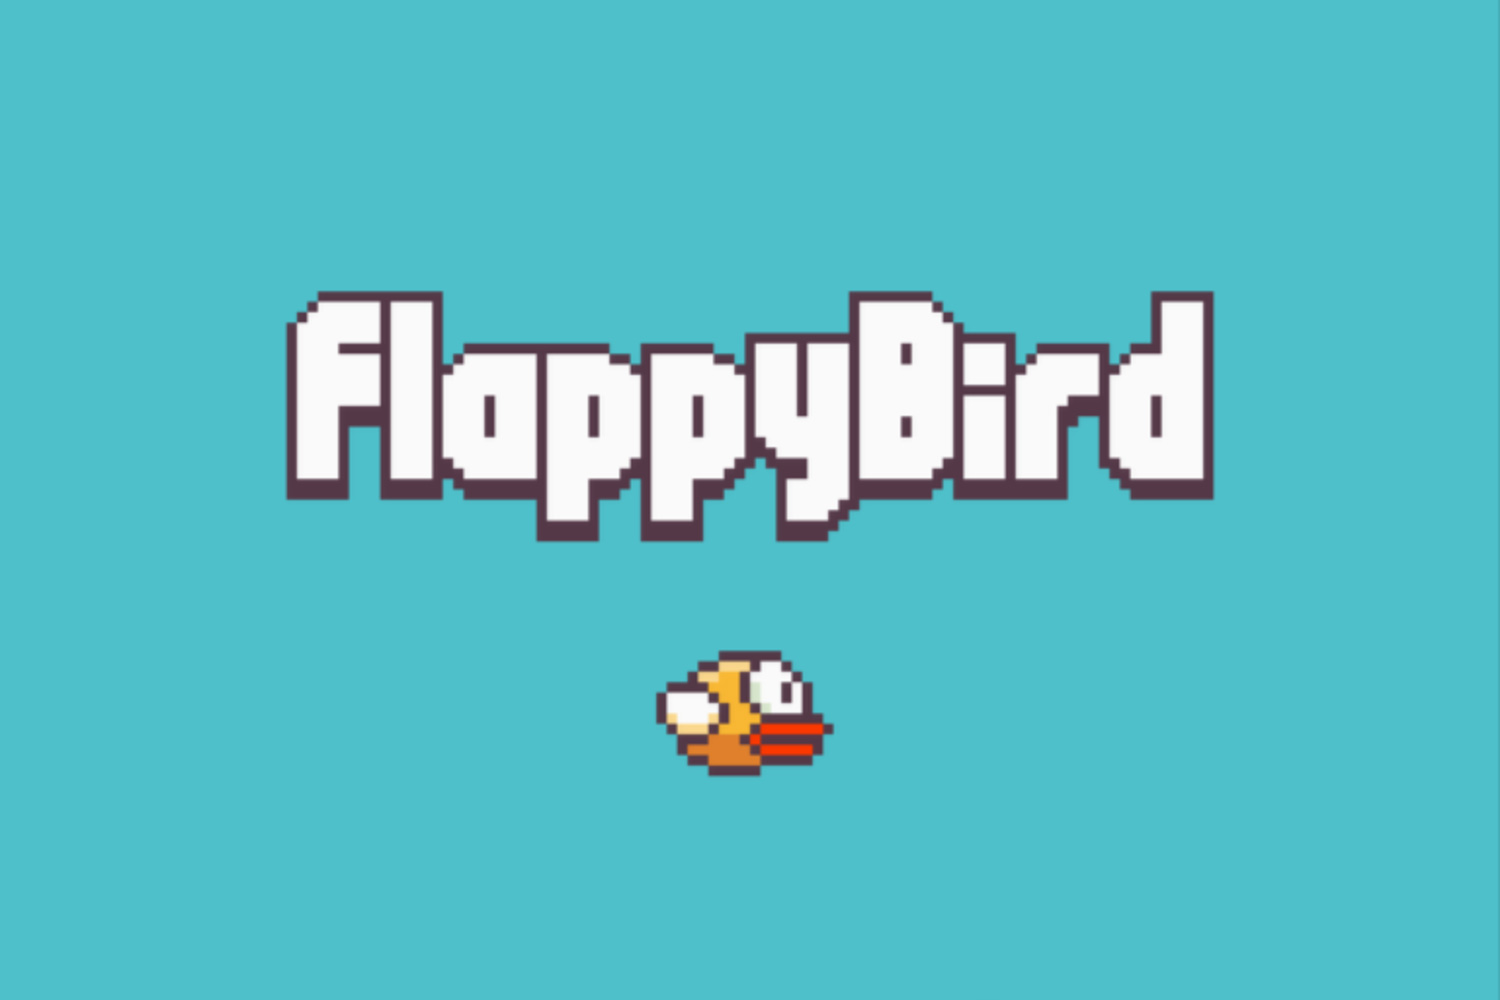 بازی Droppy Flops: The Flappy Bird Inspired اکنون در Fortnite است